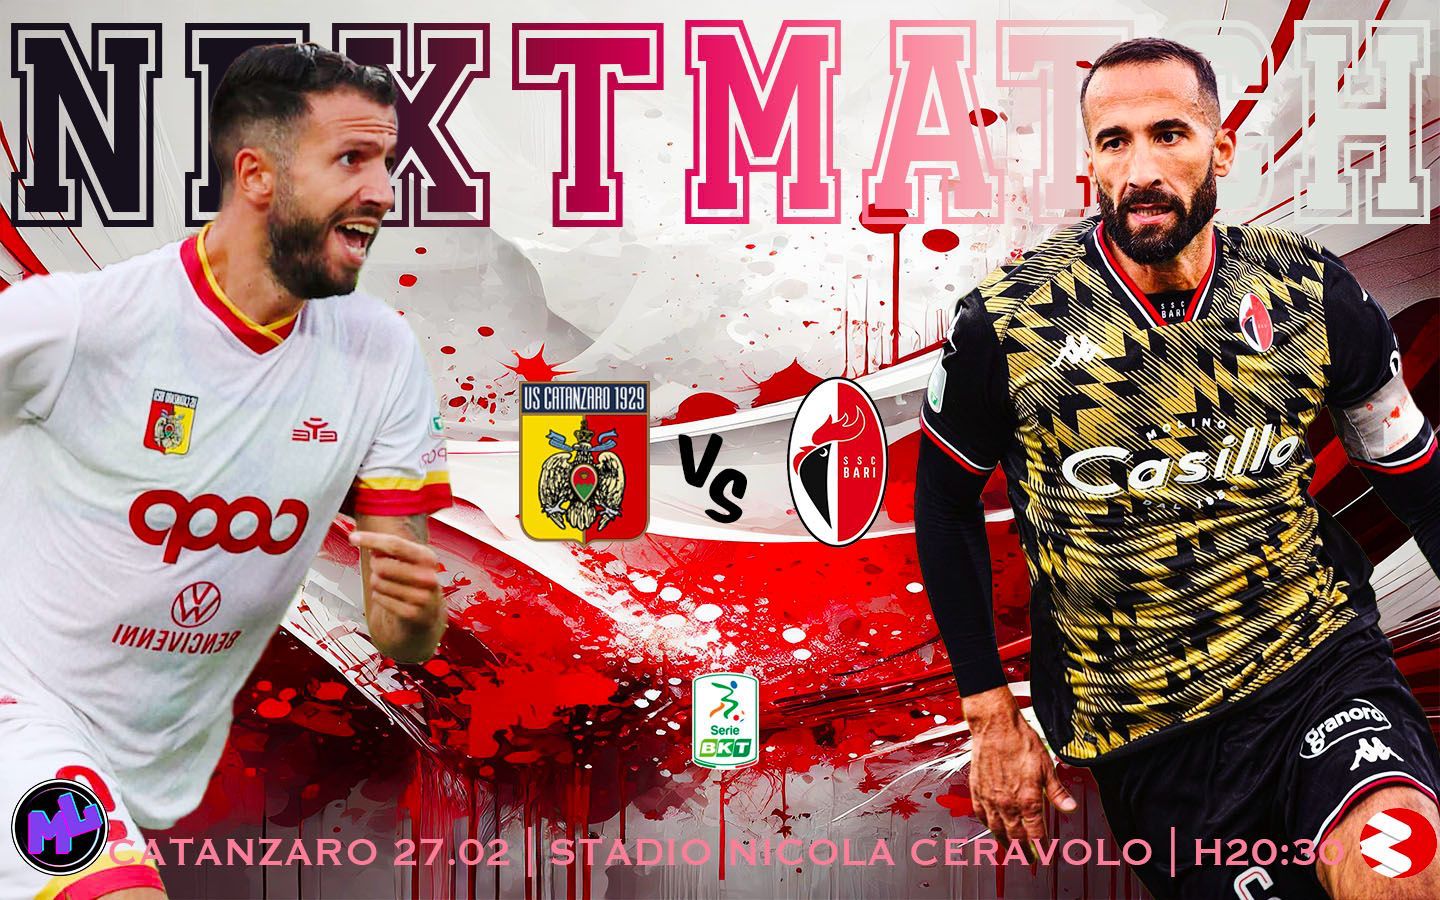 Catanzaro-Bari: match report pre partita